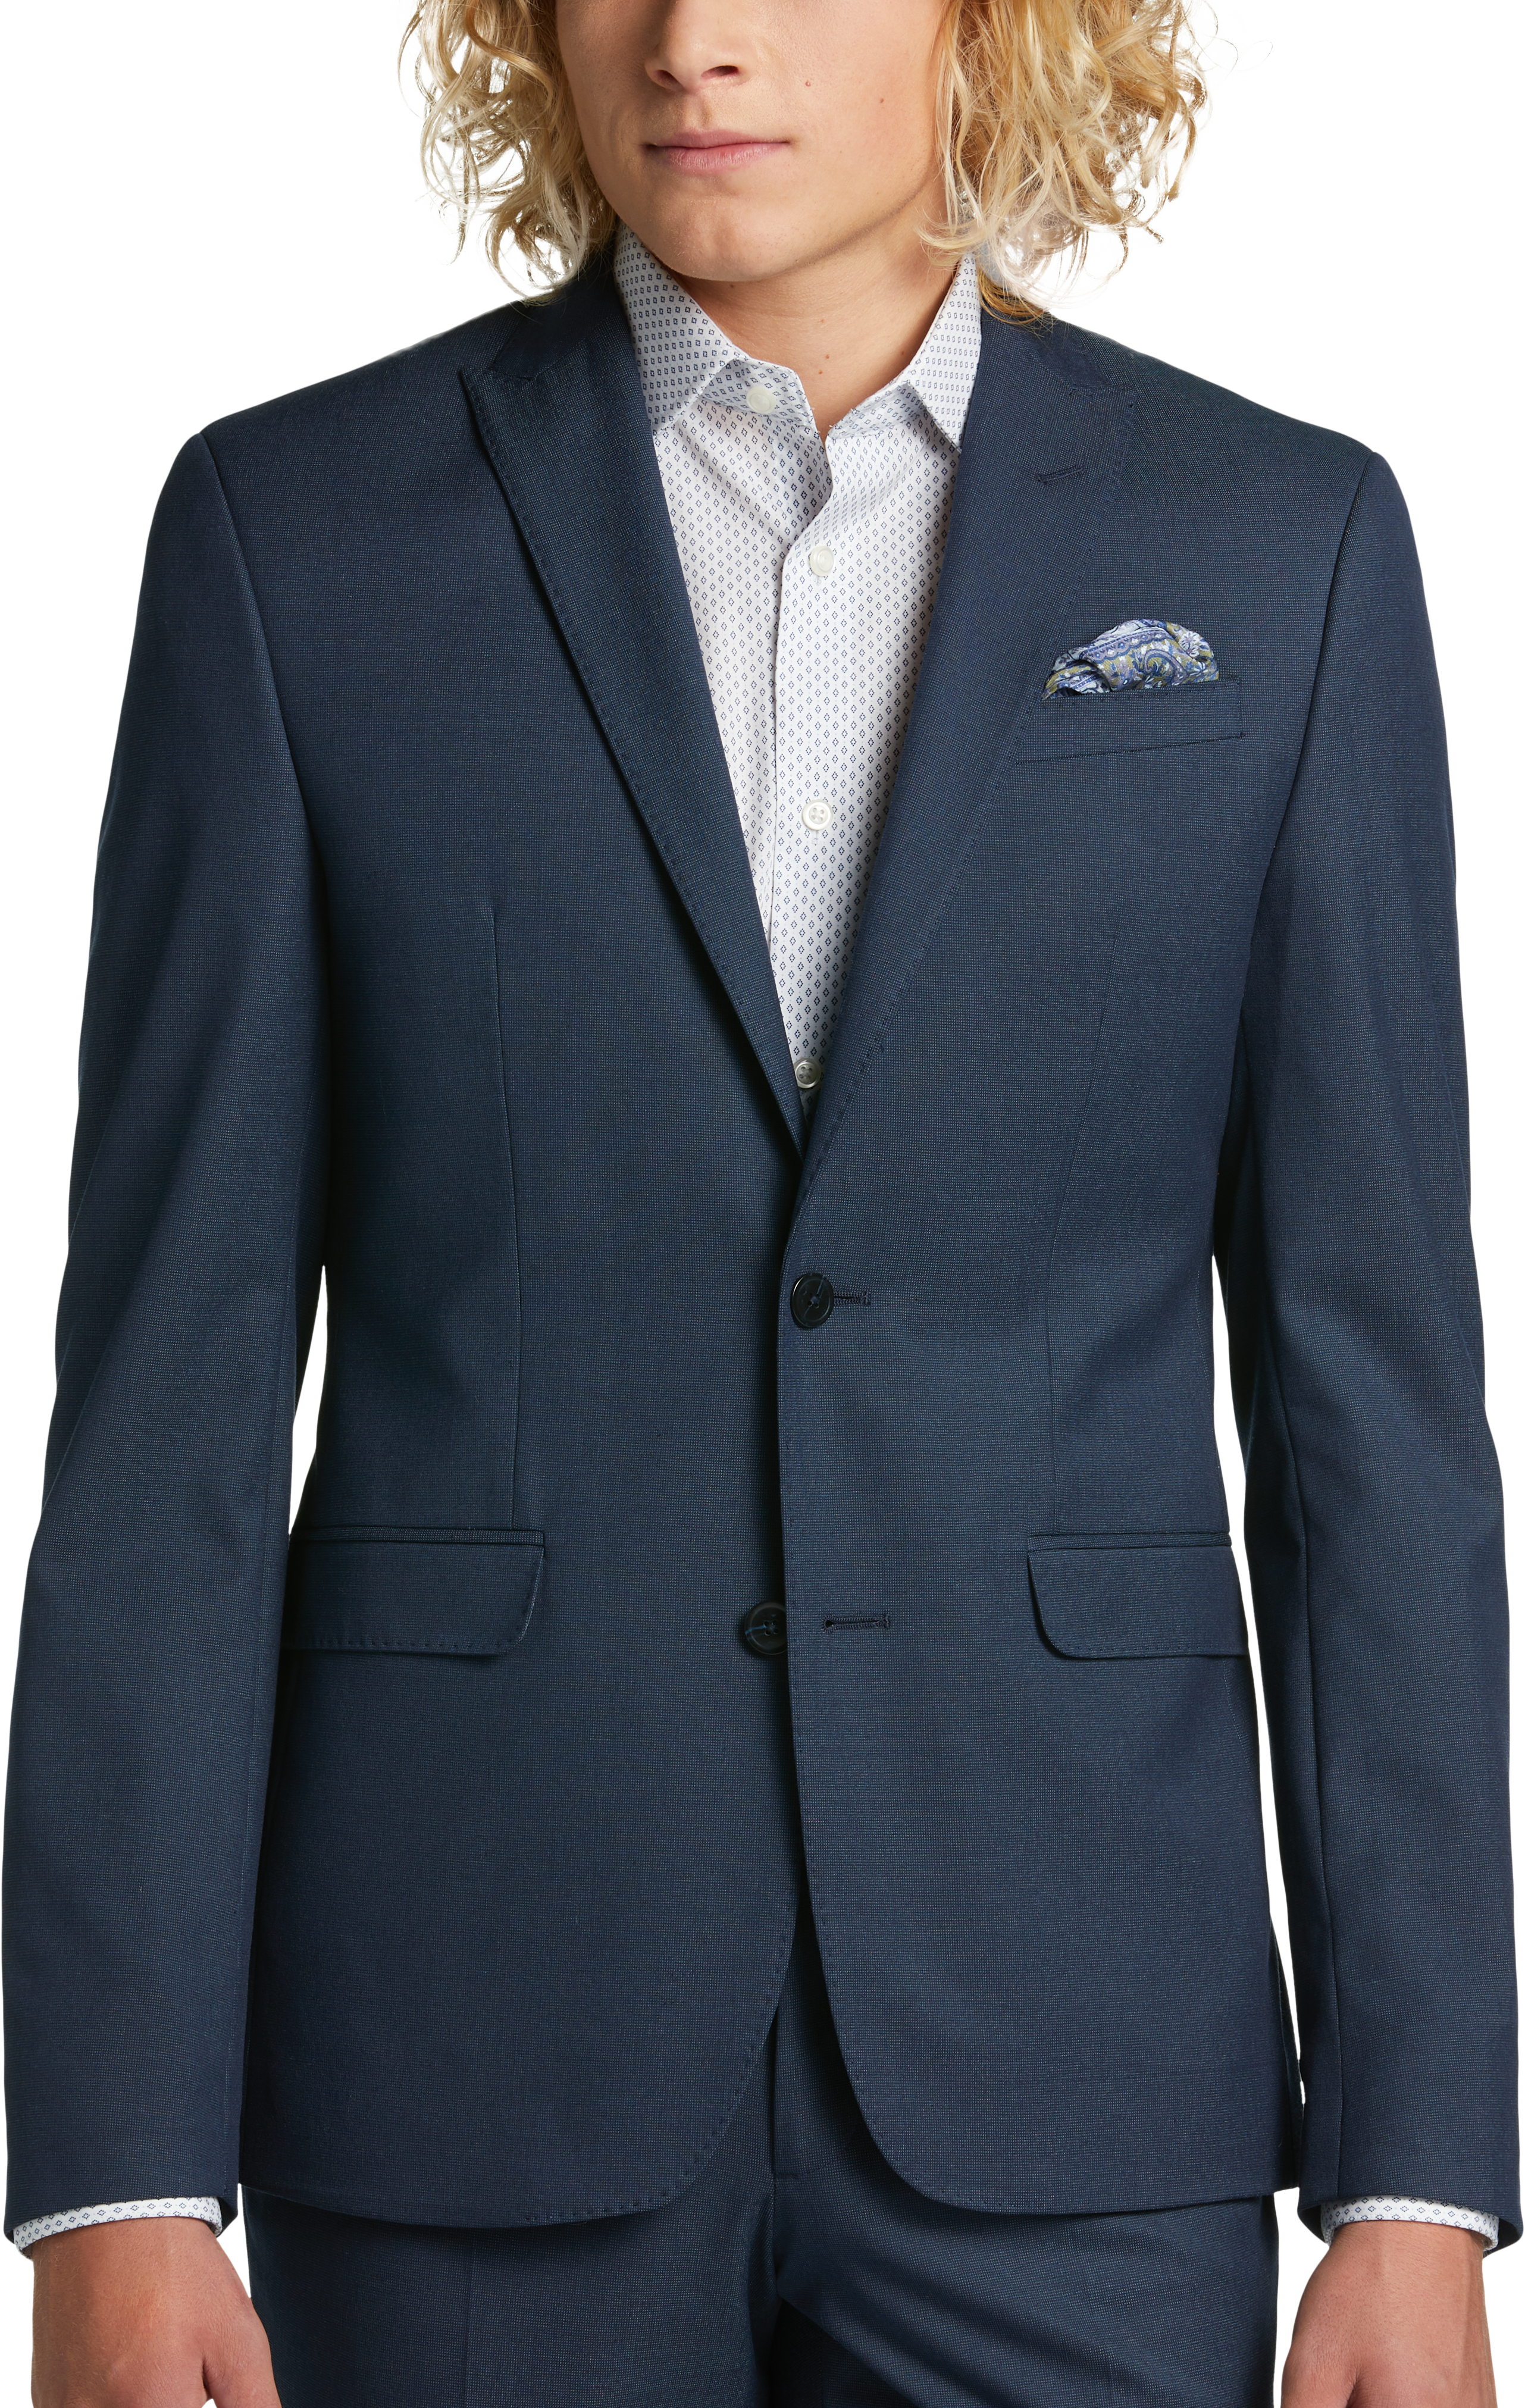 Egara Skinny Fit Suit Separates Coat, Teal Tic